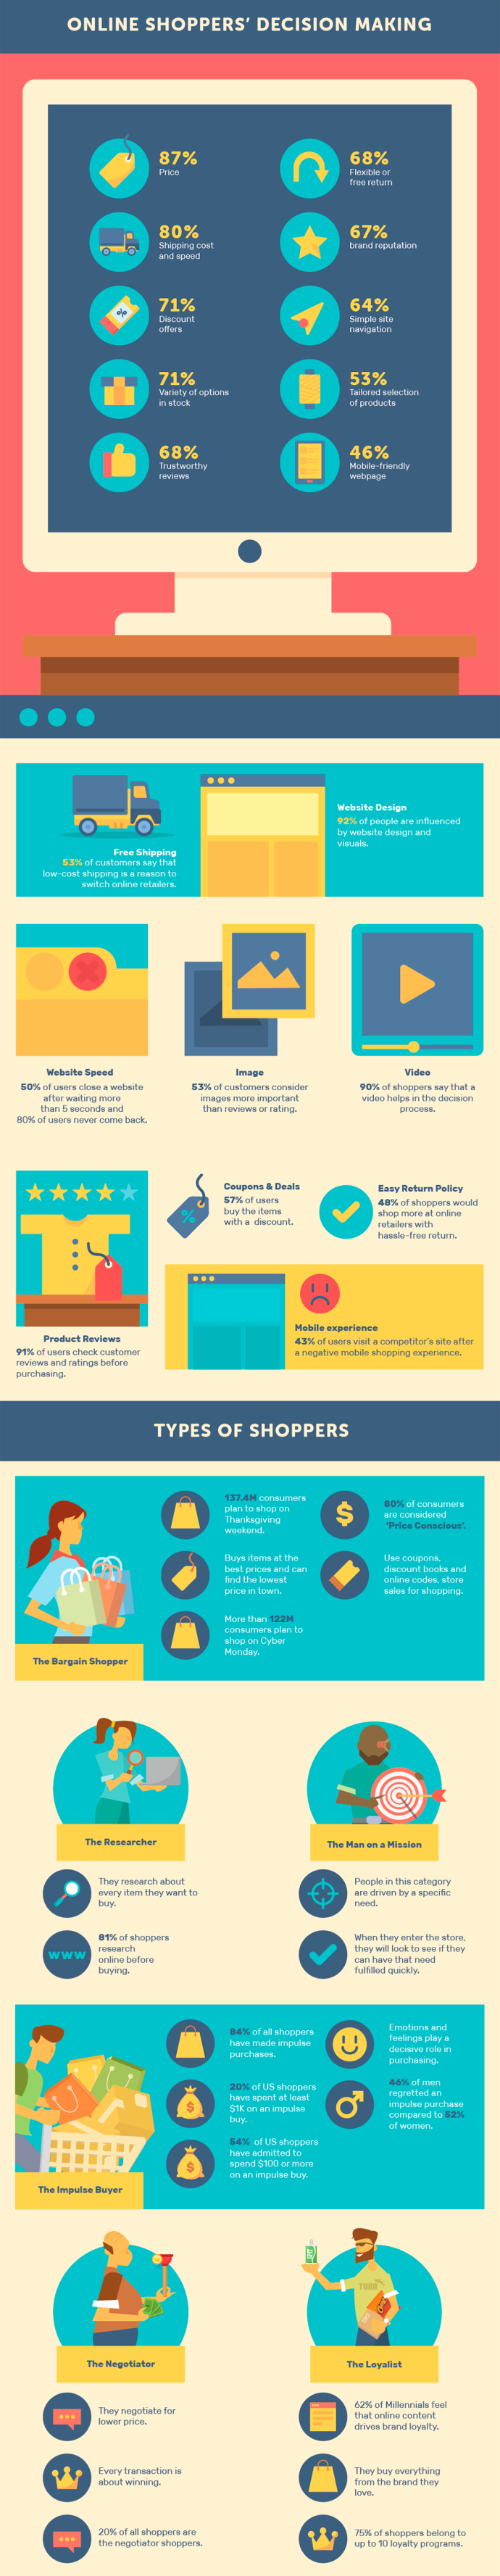  Внутри потребительского разума: как ведут себя покупатели онлайн и офлайн (инфографика)